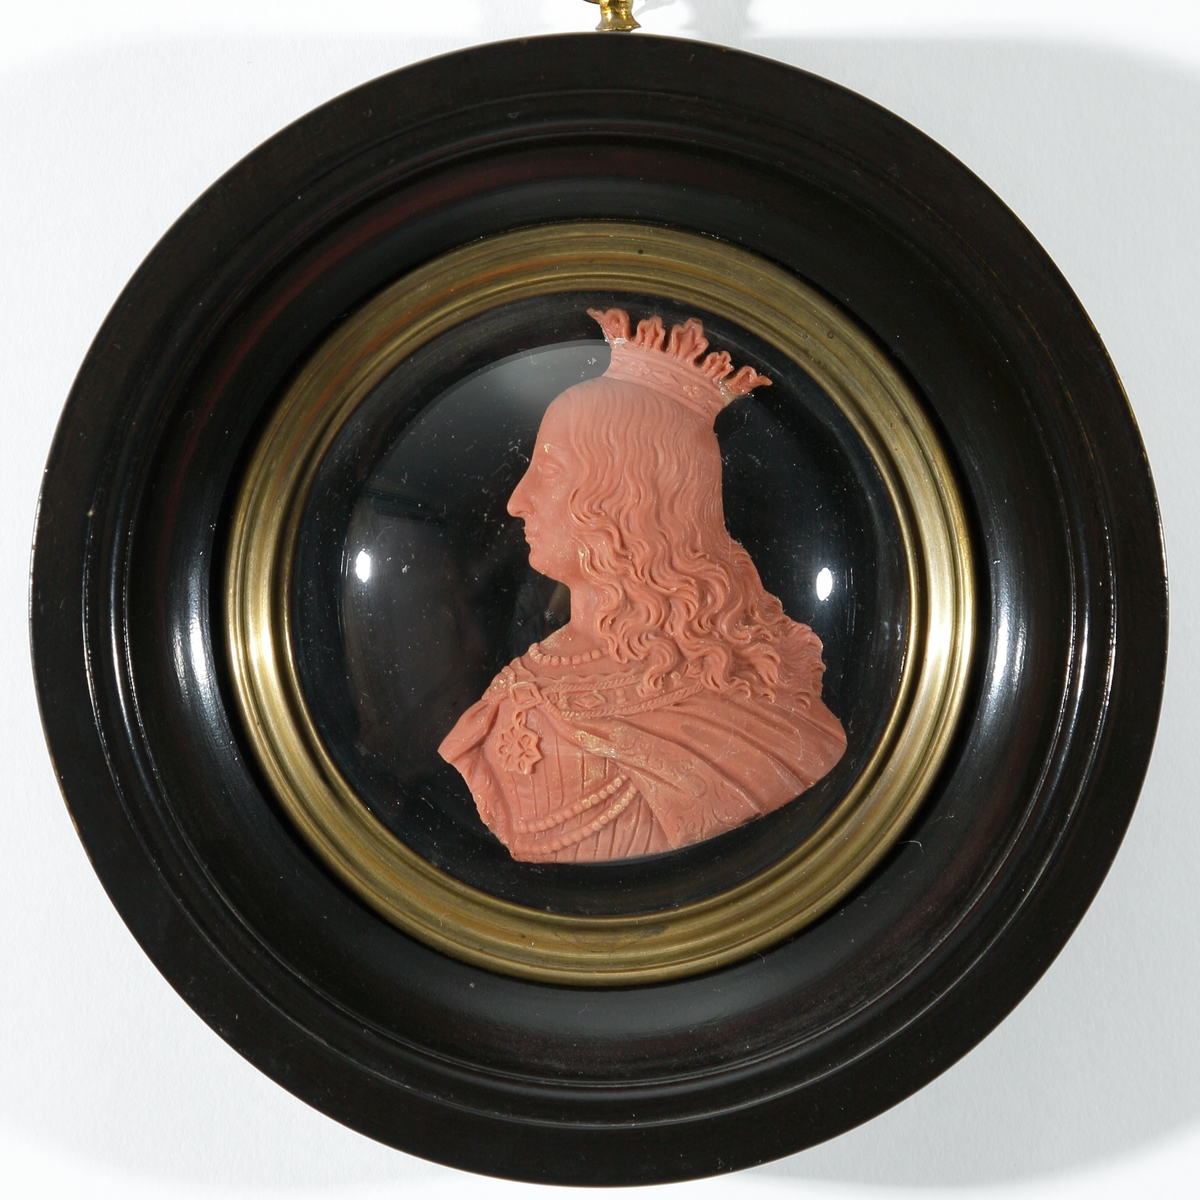 Vaxtavla. 
Reliefporträtt i profil (bröstbild), utfört i tegelrött vax. Föreställer drottning Margaretha (1352-1412) (fantasiporträtt) . Inramad i rund, profilerad och svartlackerad träram med en rund, konvex glasplatta över själva porträttet, fastsatt med mässingslist.
På bakstycket klistrat papper med förklarande text om drottning Margaretha och längst ner tillverkarens namn och adress: "A. Salmson. boende vid Mynttorget. Huset No 1". Upphängningsring i mässing.